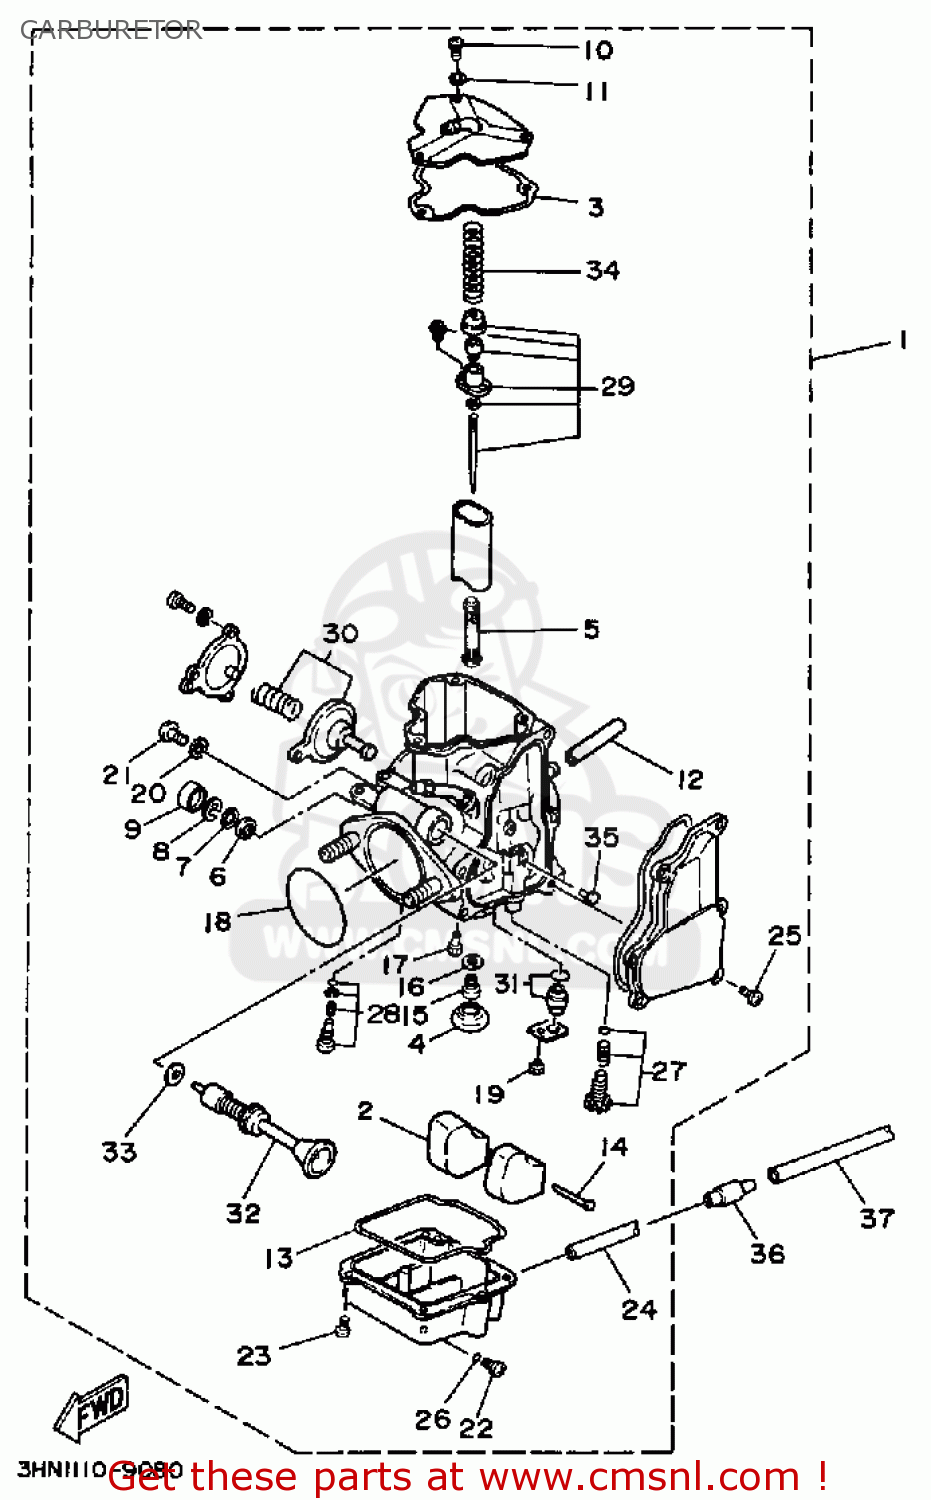 yamaha big bear 400 carburetor diagram